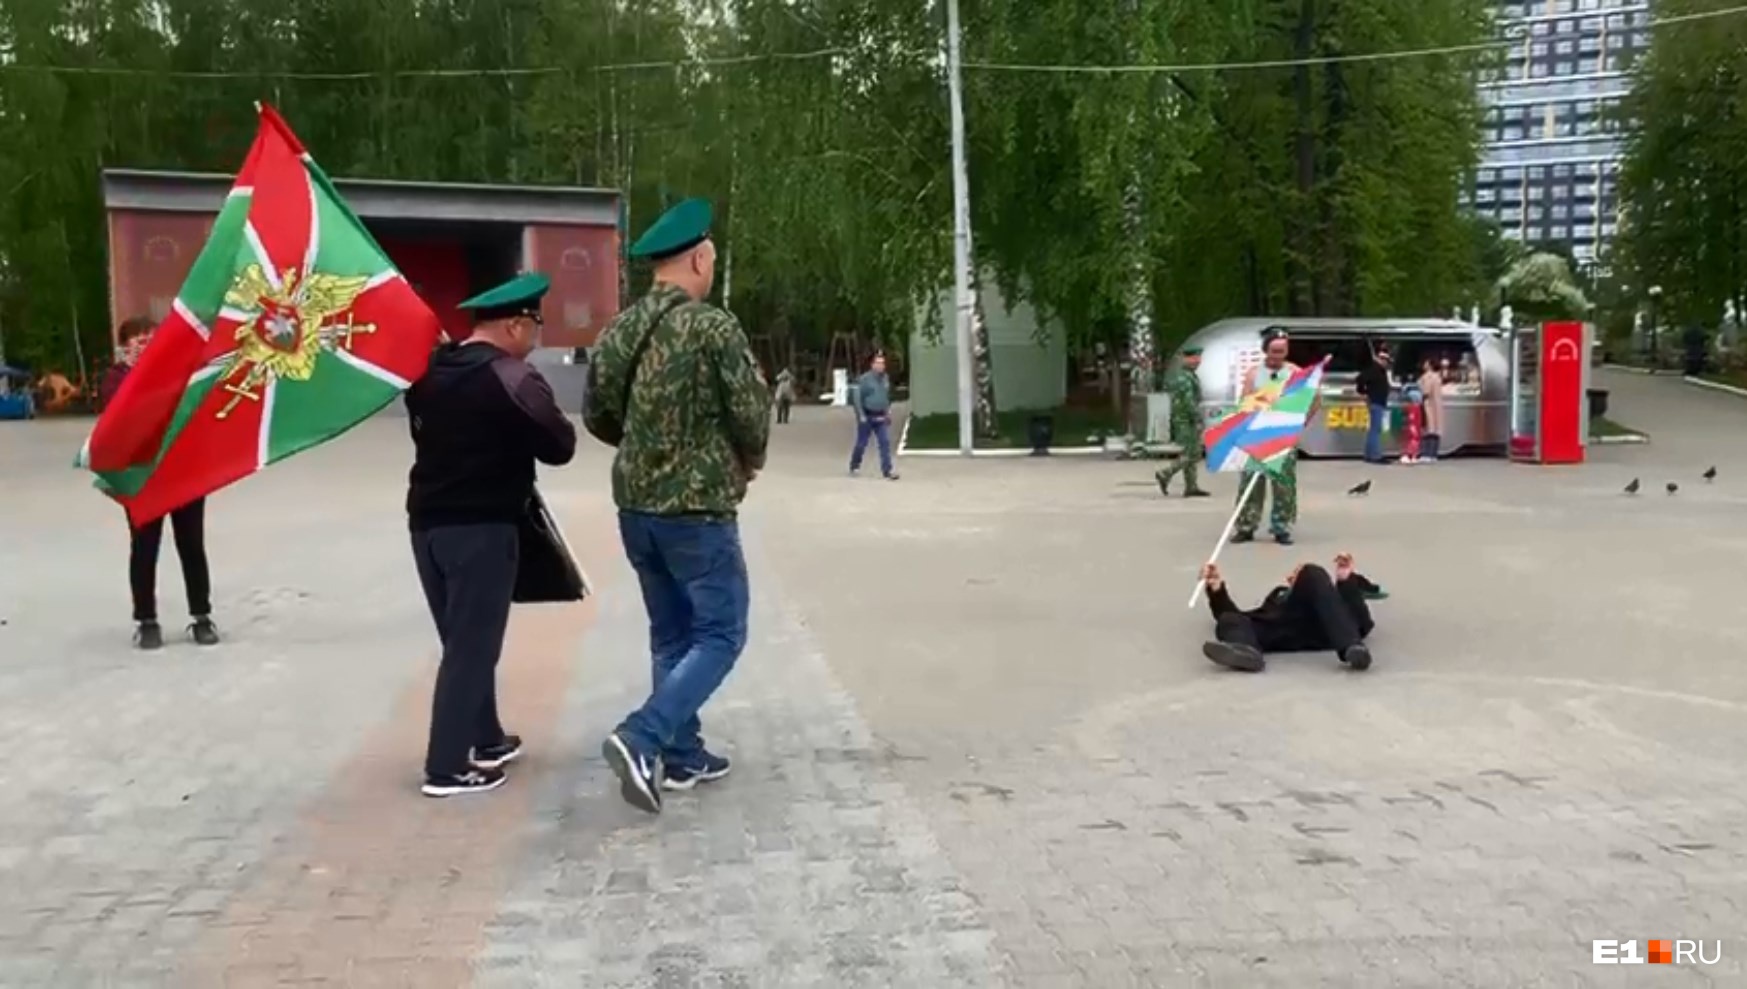 «Падают замертво». В парке в Екатеринбурге разбуянились пьяные пограничники